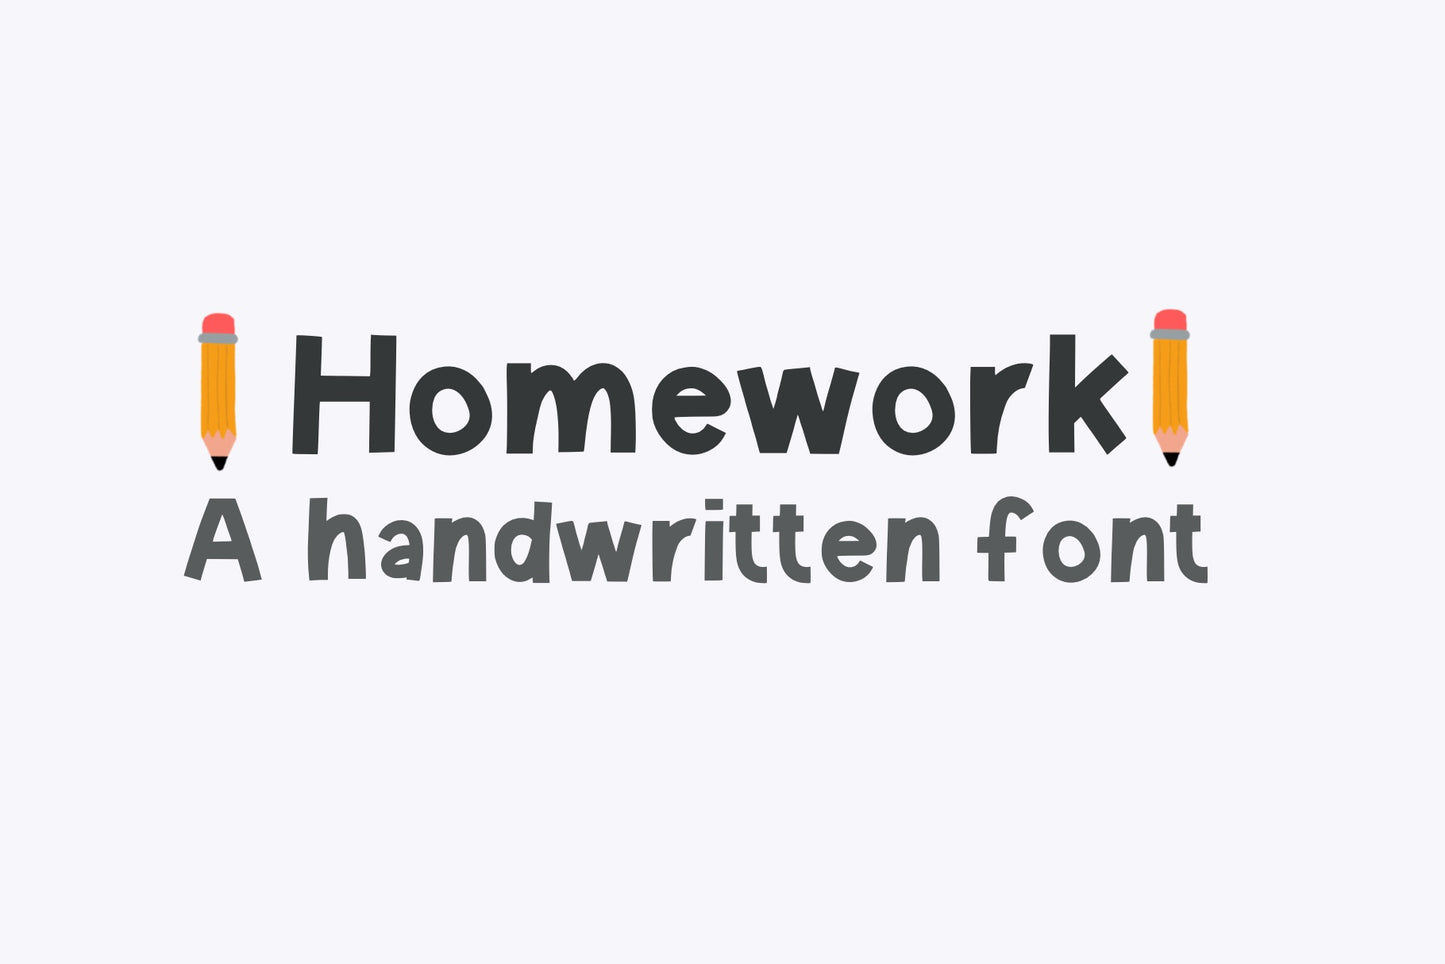 Handwritten Font - Homework